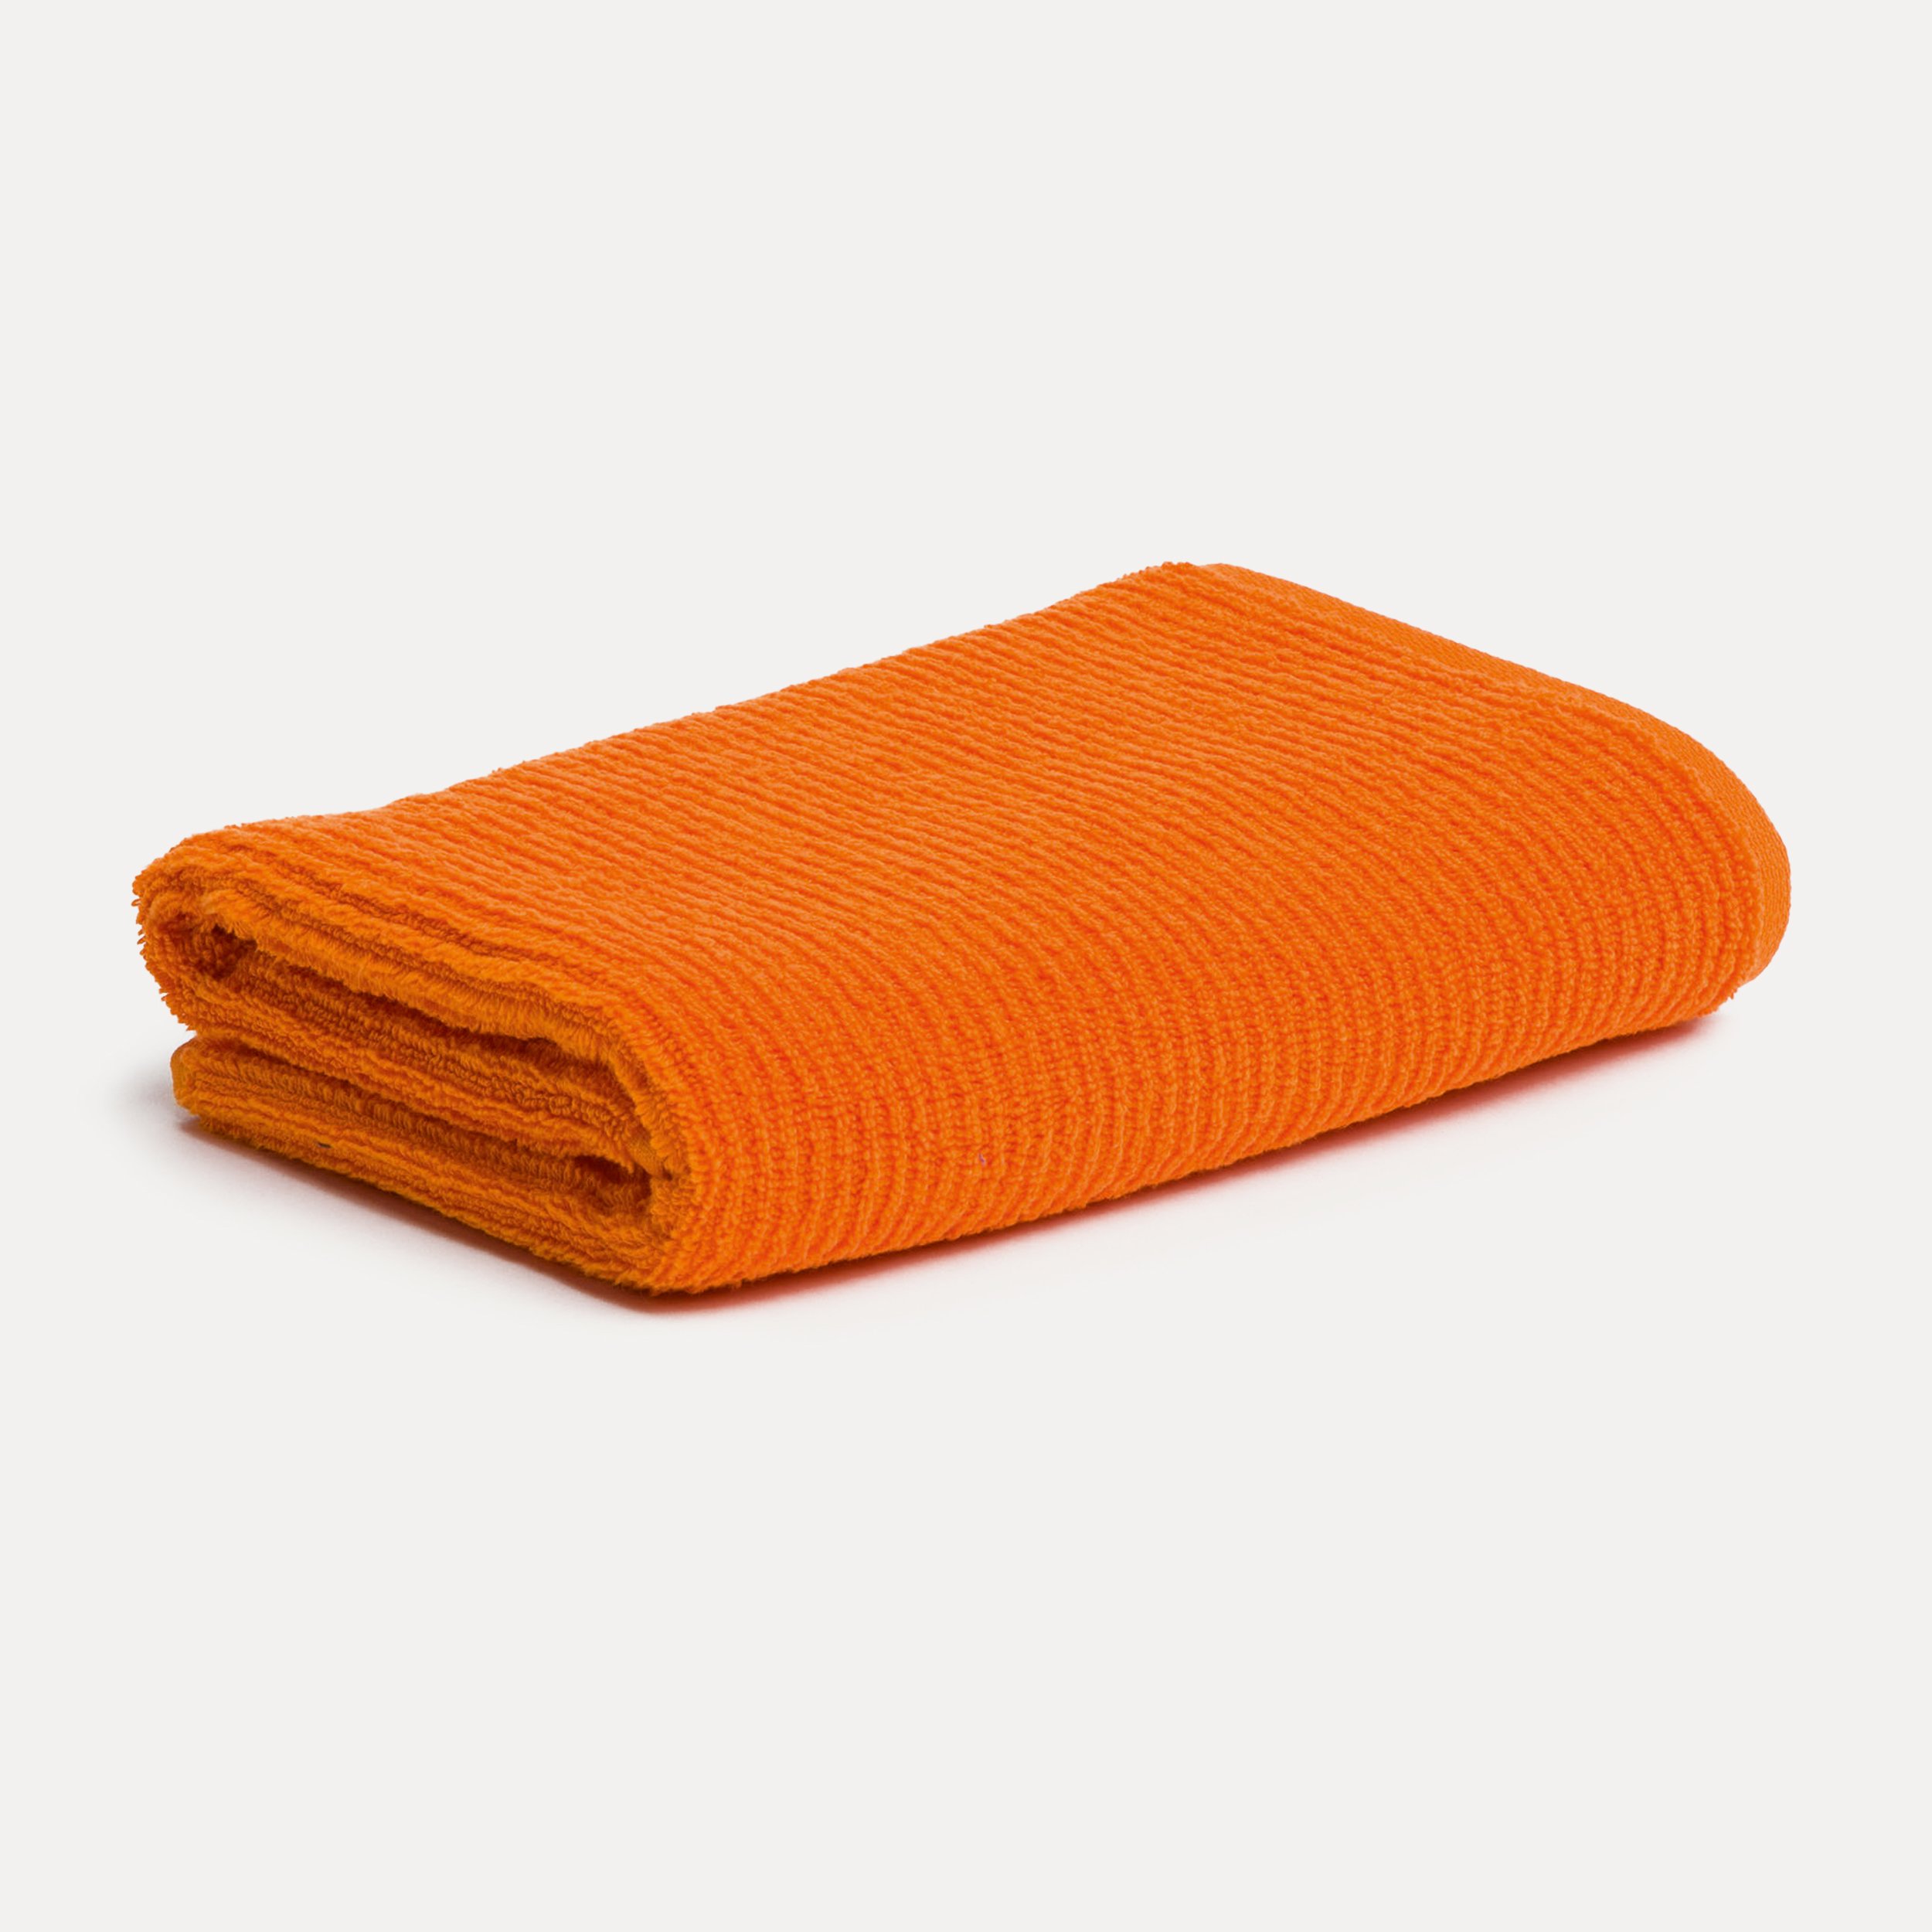 MÖVE Handtuch Orange Elements 50X100 cm (orange)| MÖVE